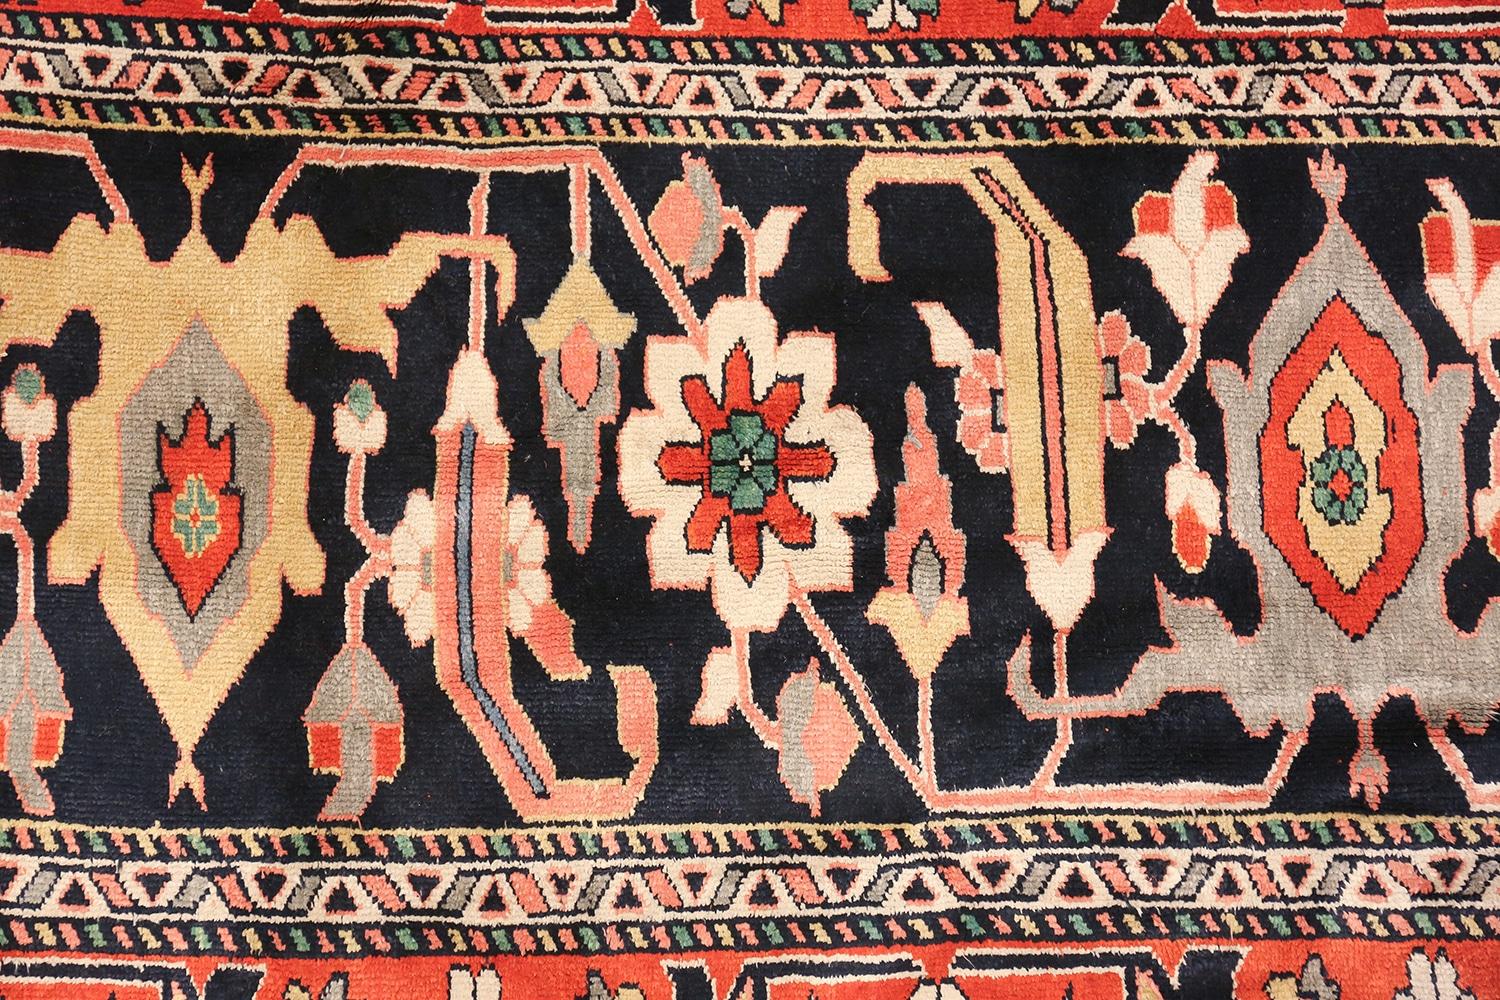 Schöne große Größe luxuriöse Vintage persische Seide Heriz Teppich, Herkunftsland / Teppich-Typ: Vintage Perserteppich, Datum: etwa Ende des 20. Jahrhunderts. Größe: 13 ft 1 in x 19 ft (3,99 m x 5,79 m)

